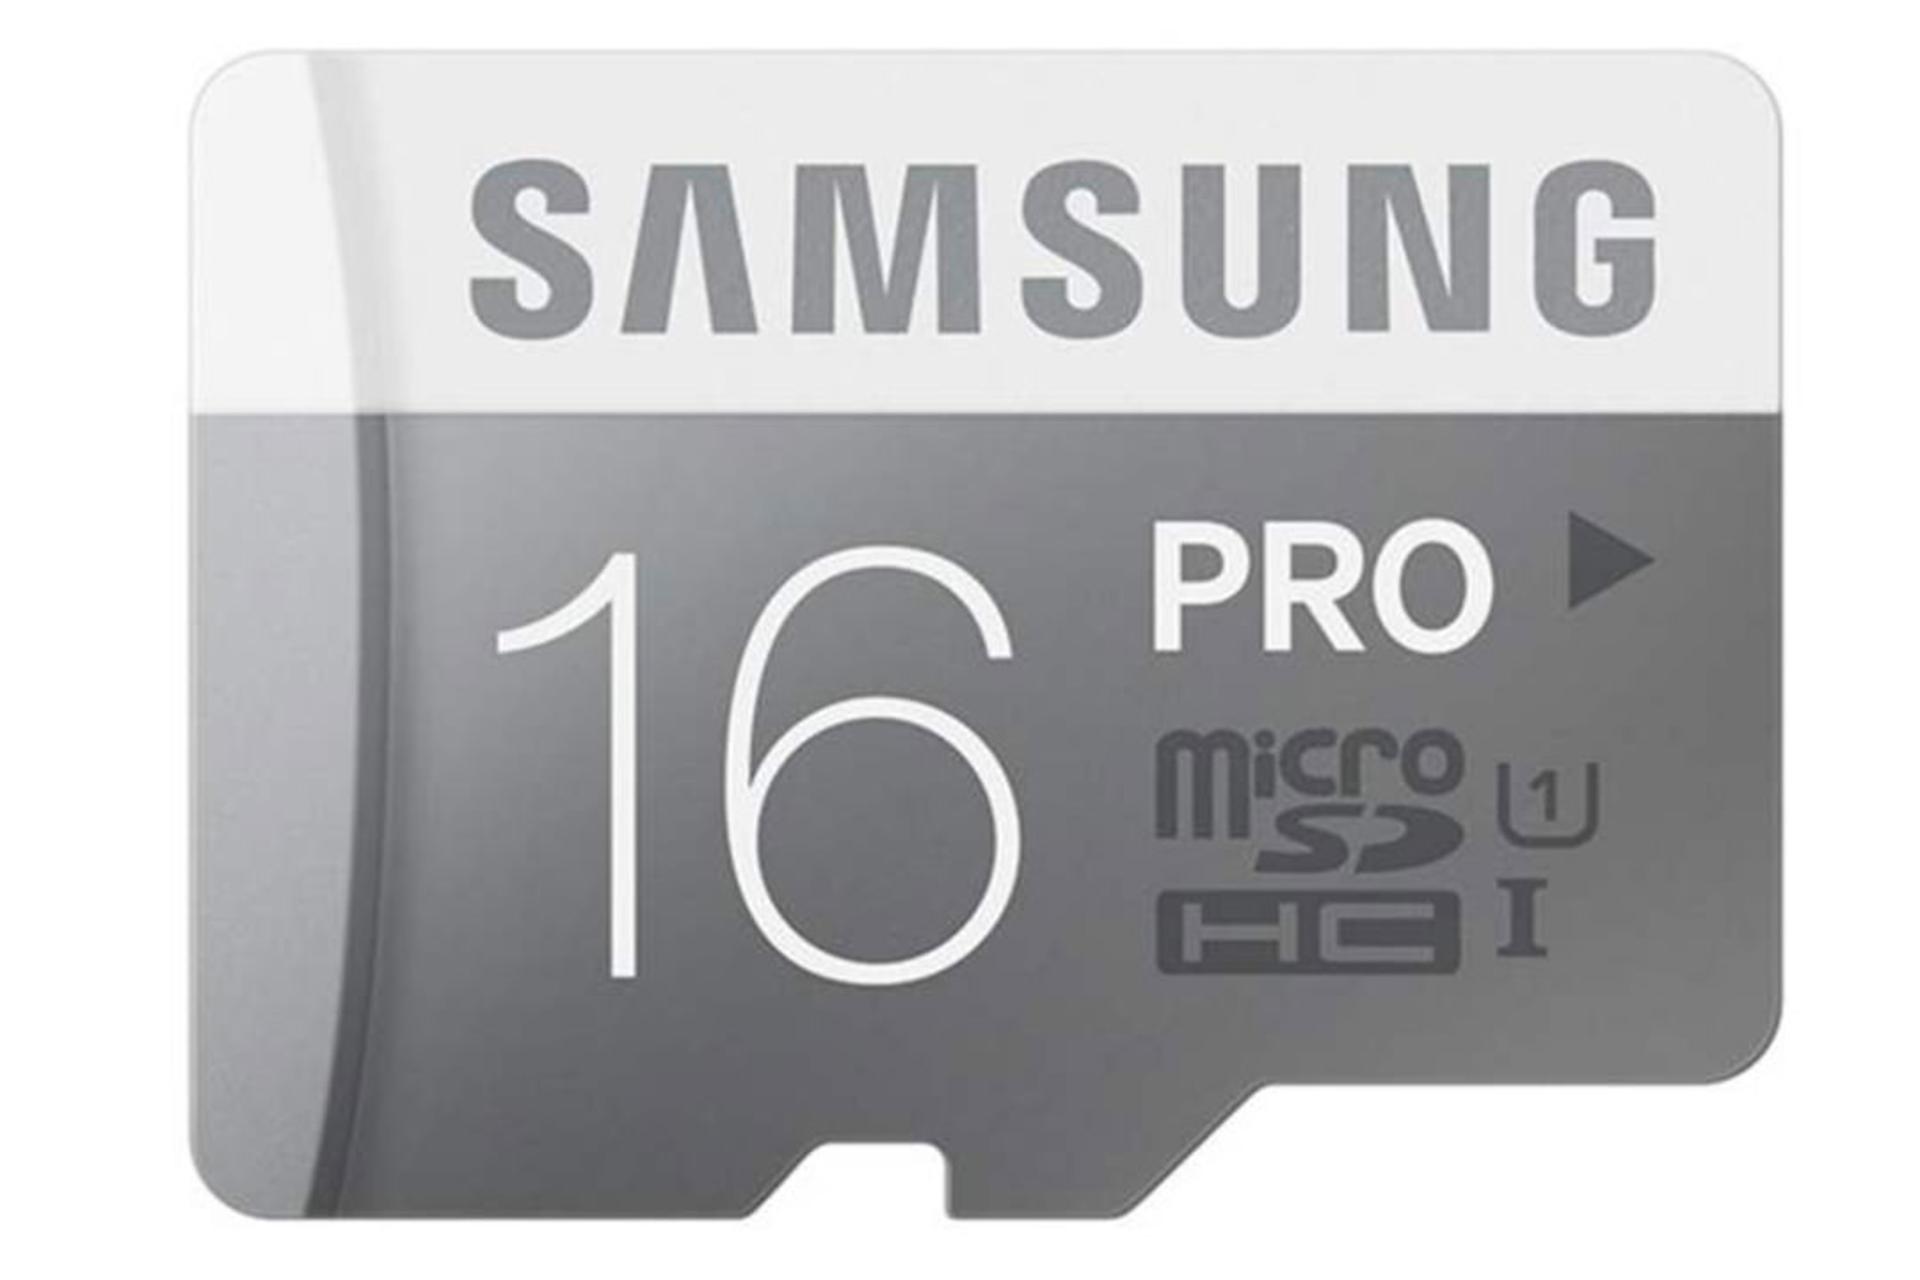 مرجع متخصصين ايران Samsung Pro microSDHC Class 10 UHS-I U1 16GB